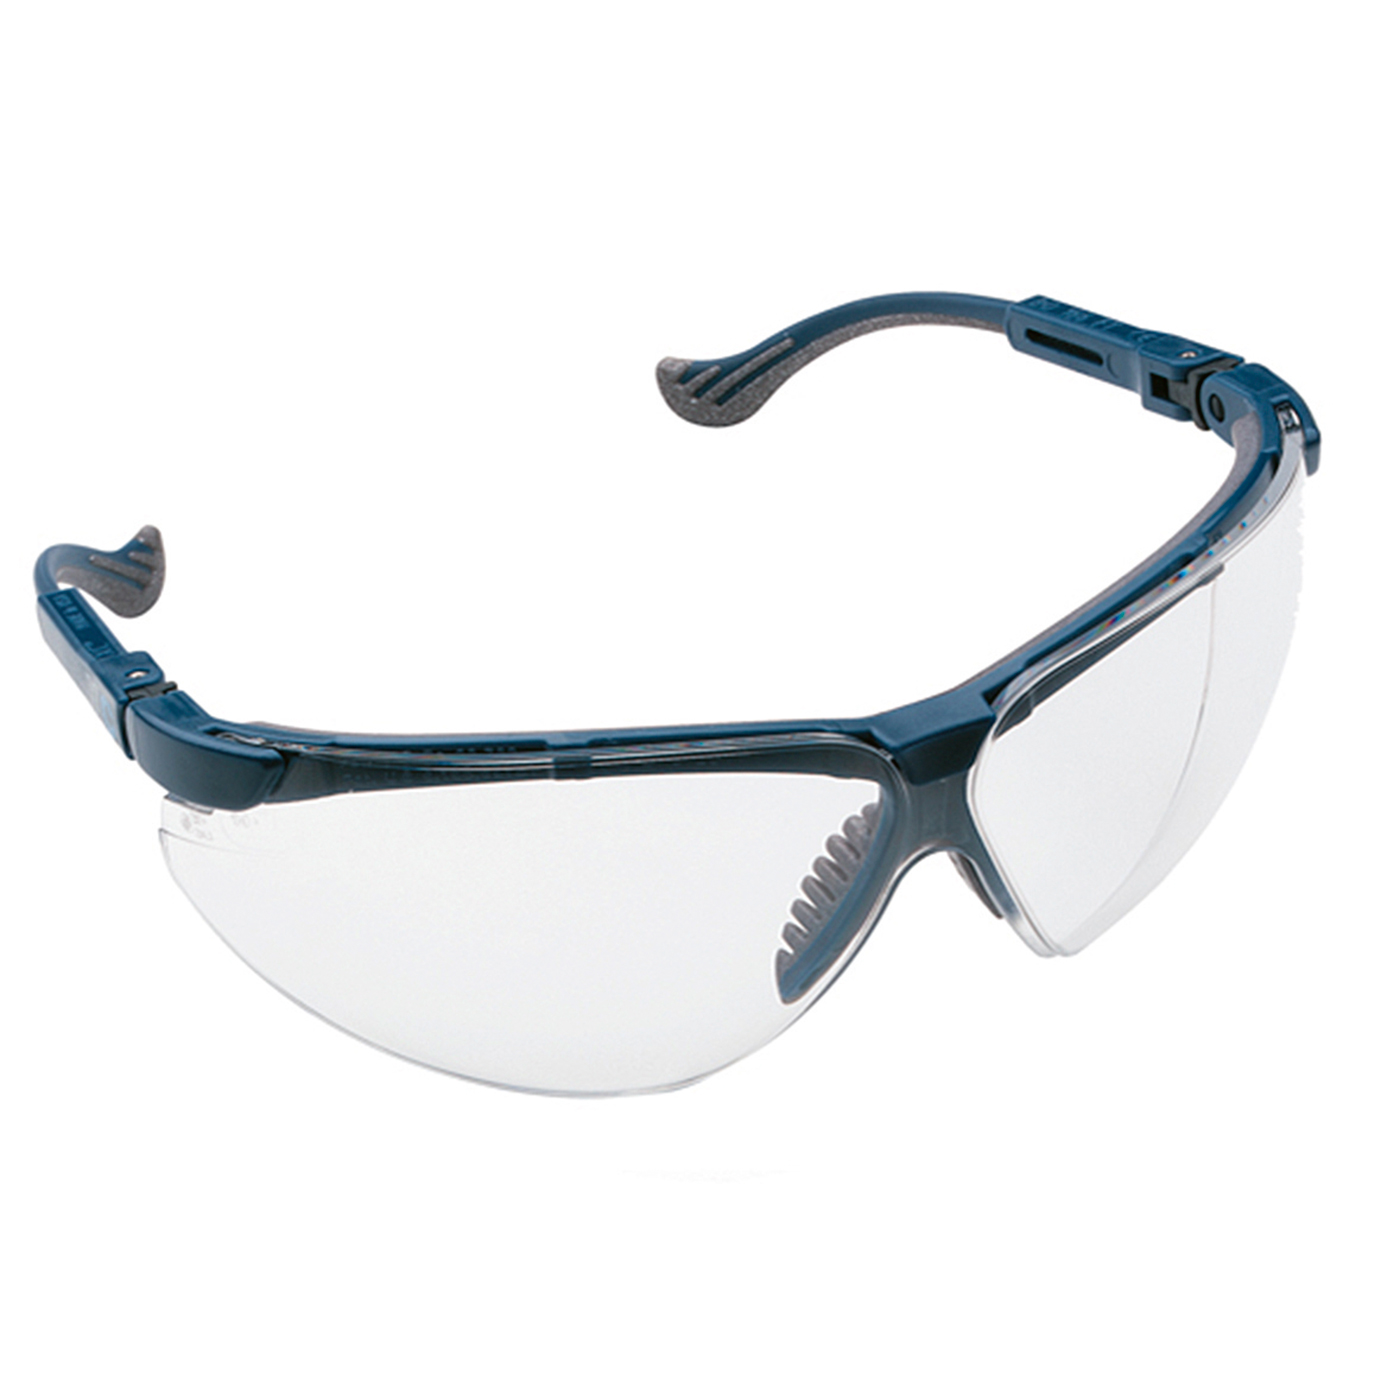 Honeywell Safety Products Safety Products XC Schutzbrille, Scheibe klar, Fassung blau - 1 Stück